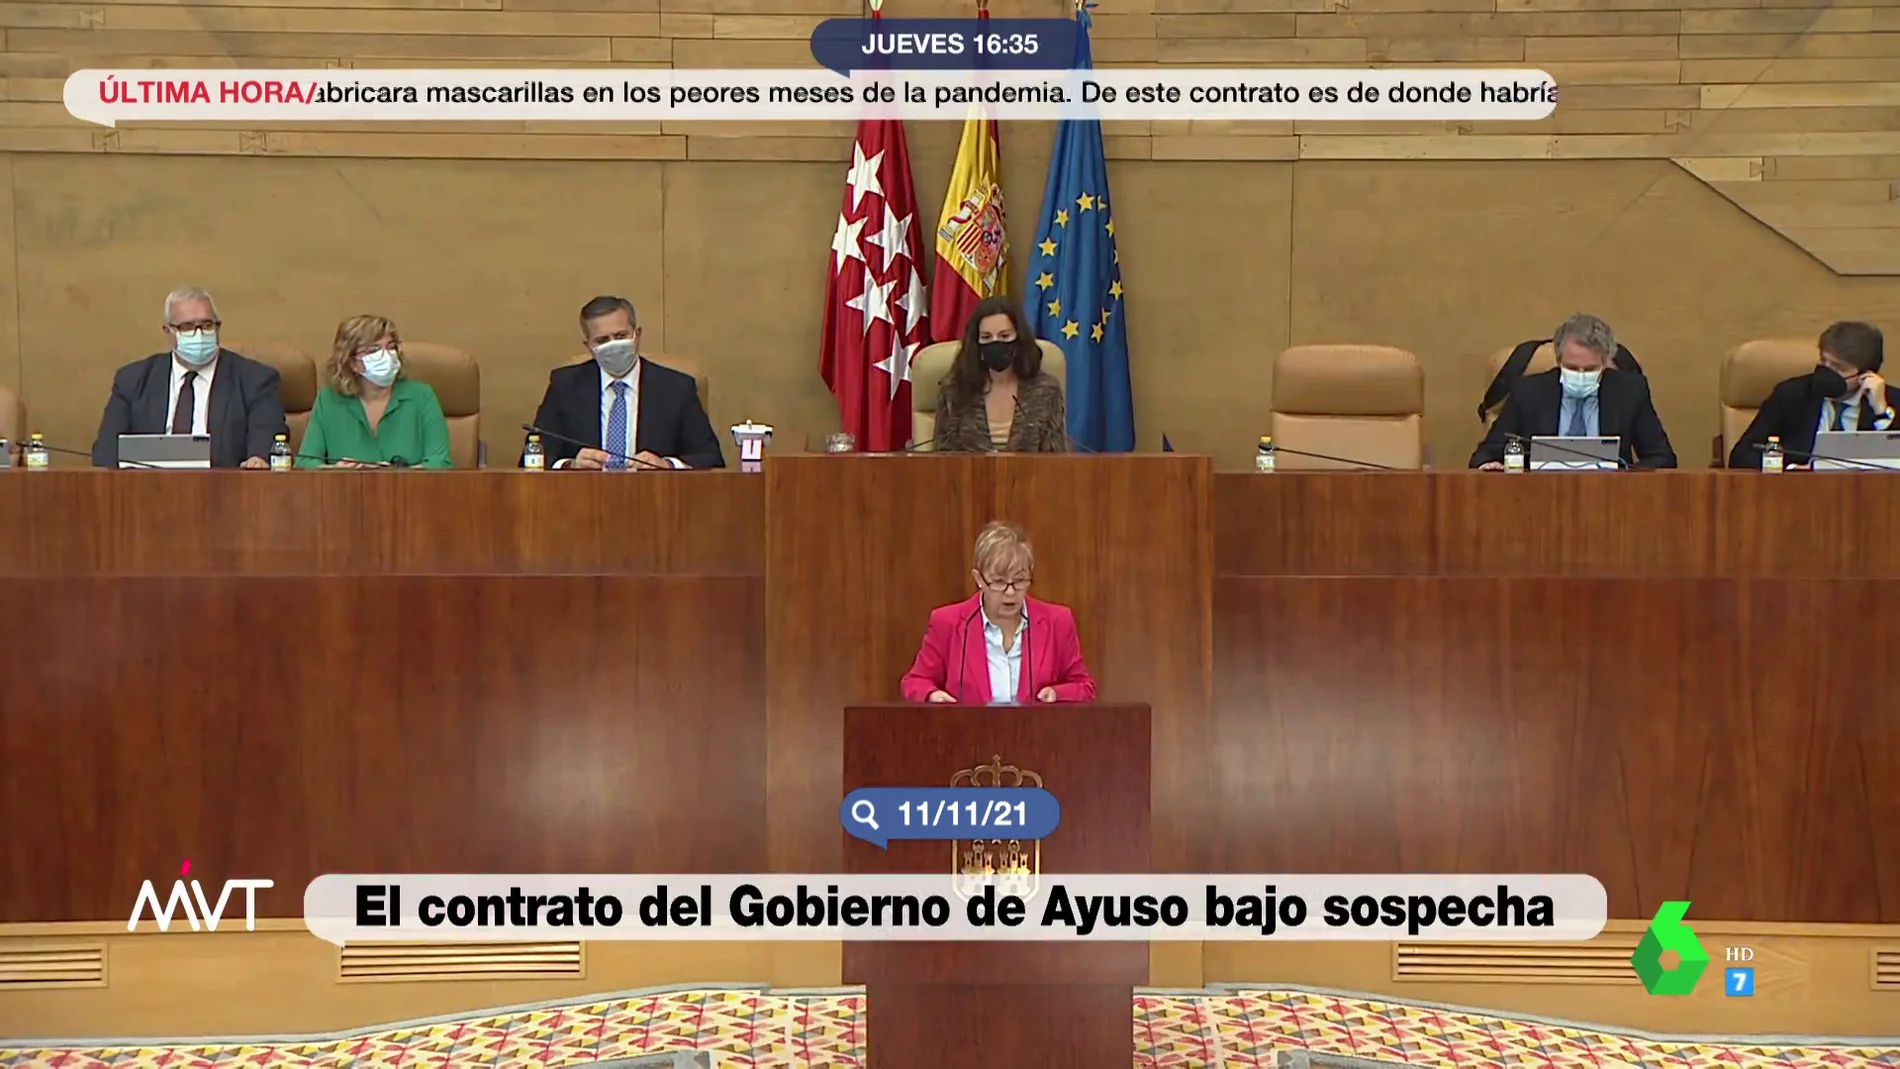 El momento en que una diputada socialista fue expulsada de la Asamblea de Madrid por acusar al hermano de Ayuso